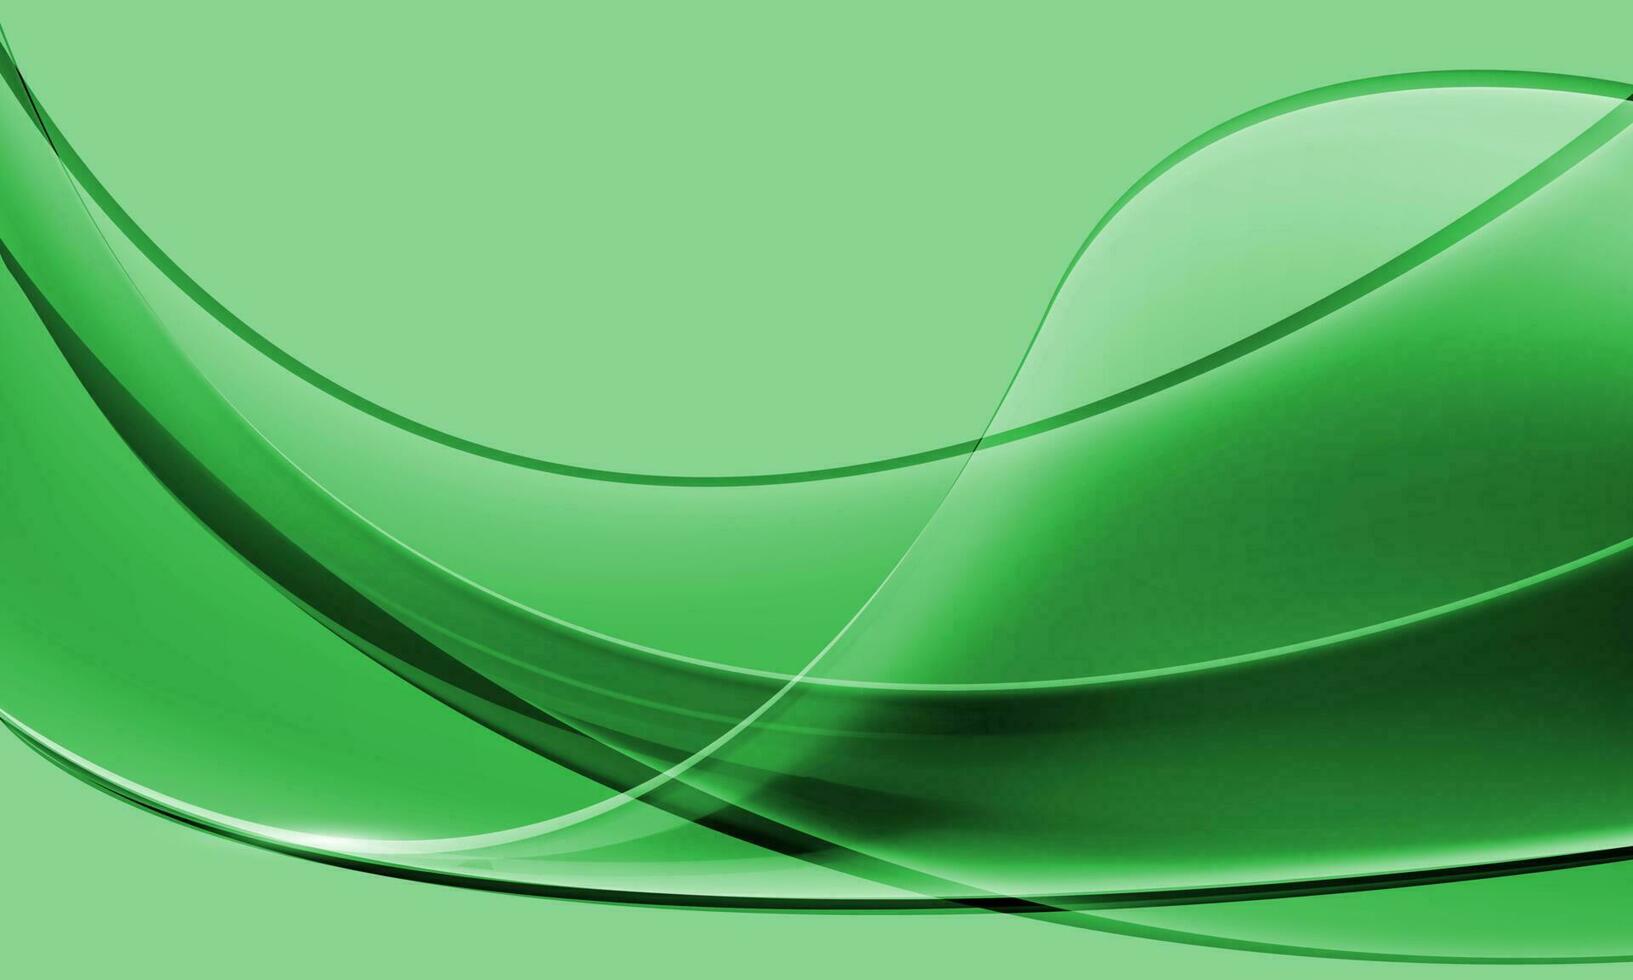 realistisch abstract gras kromme Golf Aan groen ontwerp modern luxe futuristische creatief achtergrond vector